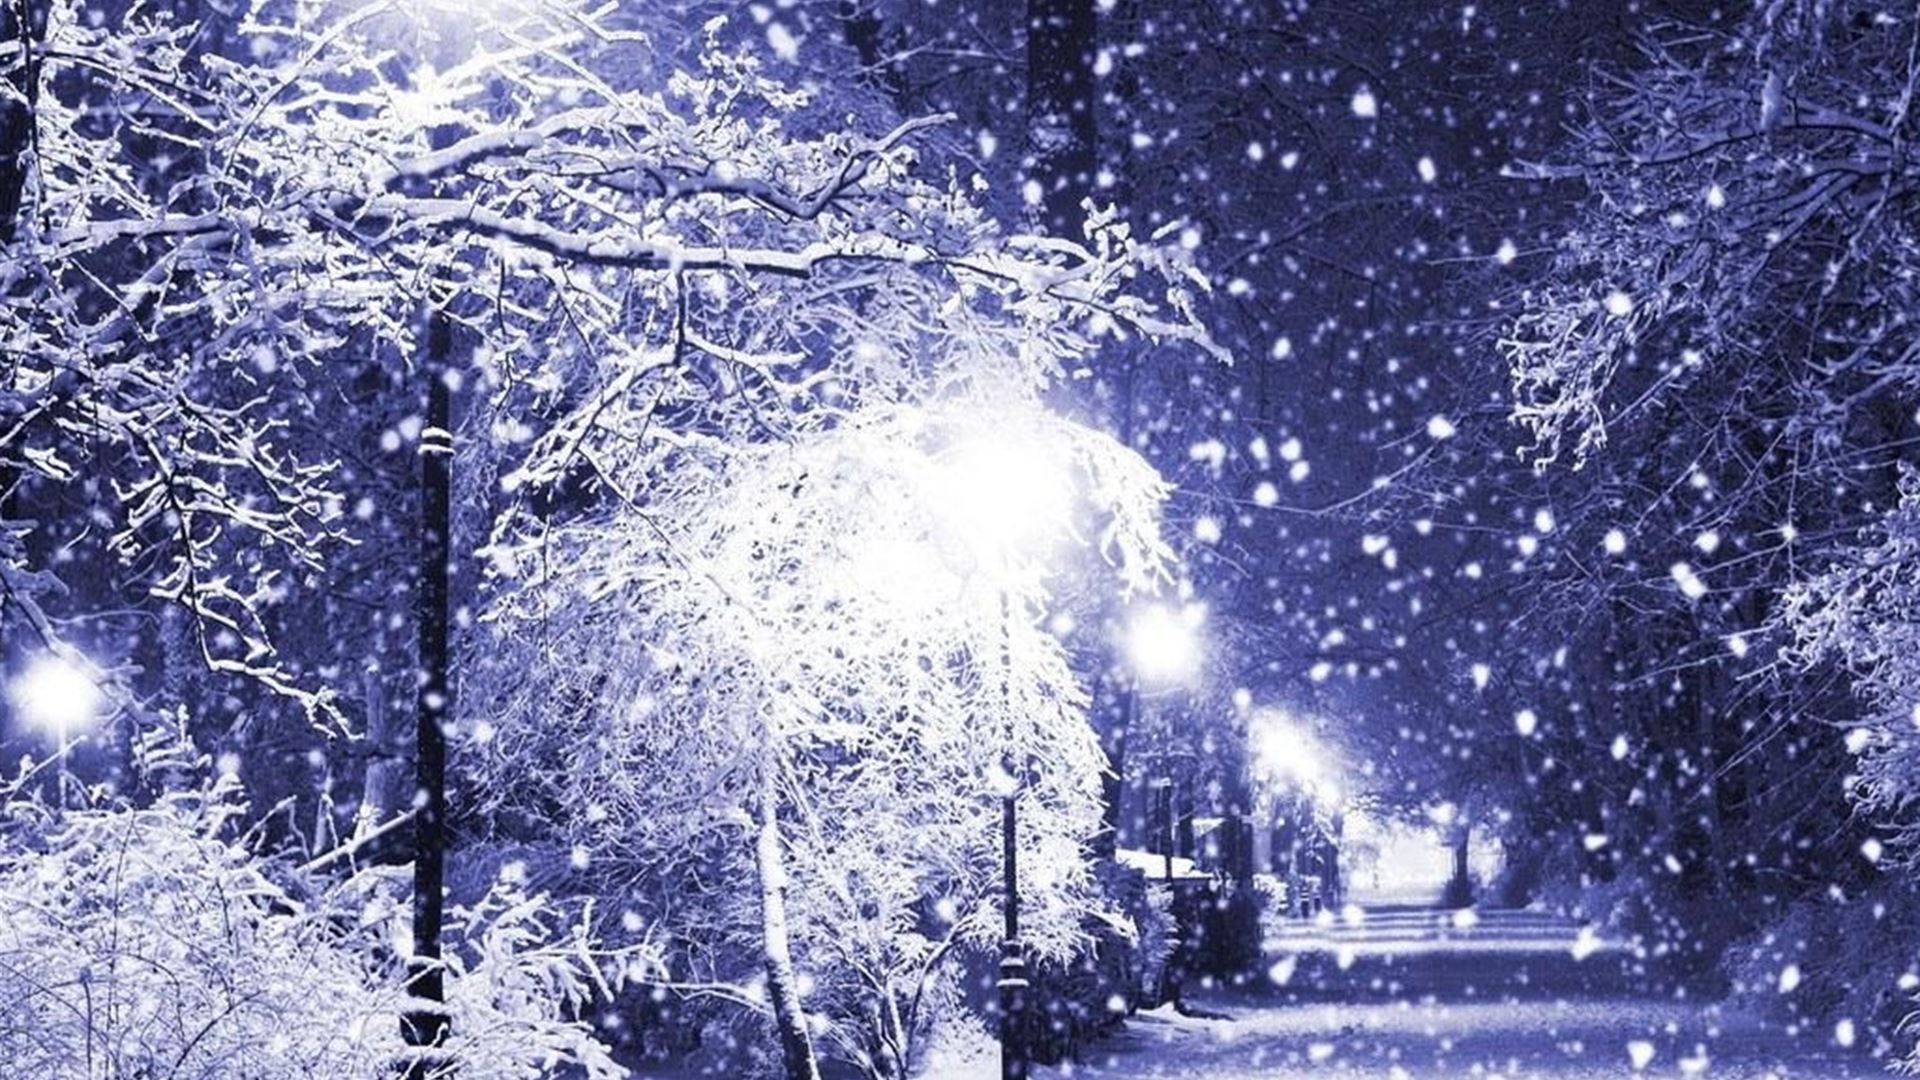 Snowy Night Street iPad Air wallpaper 